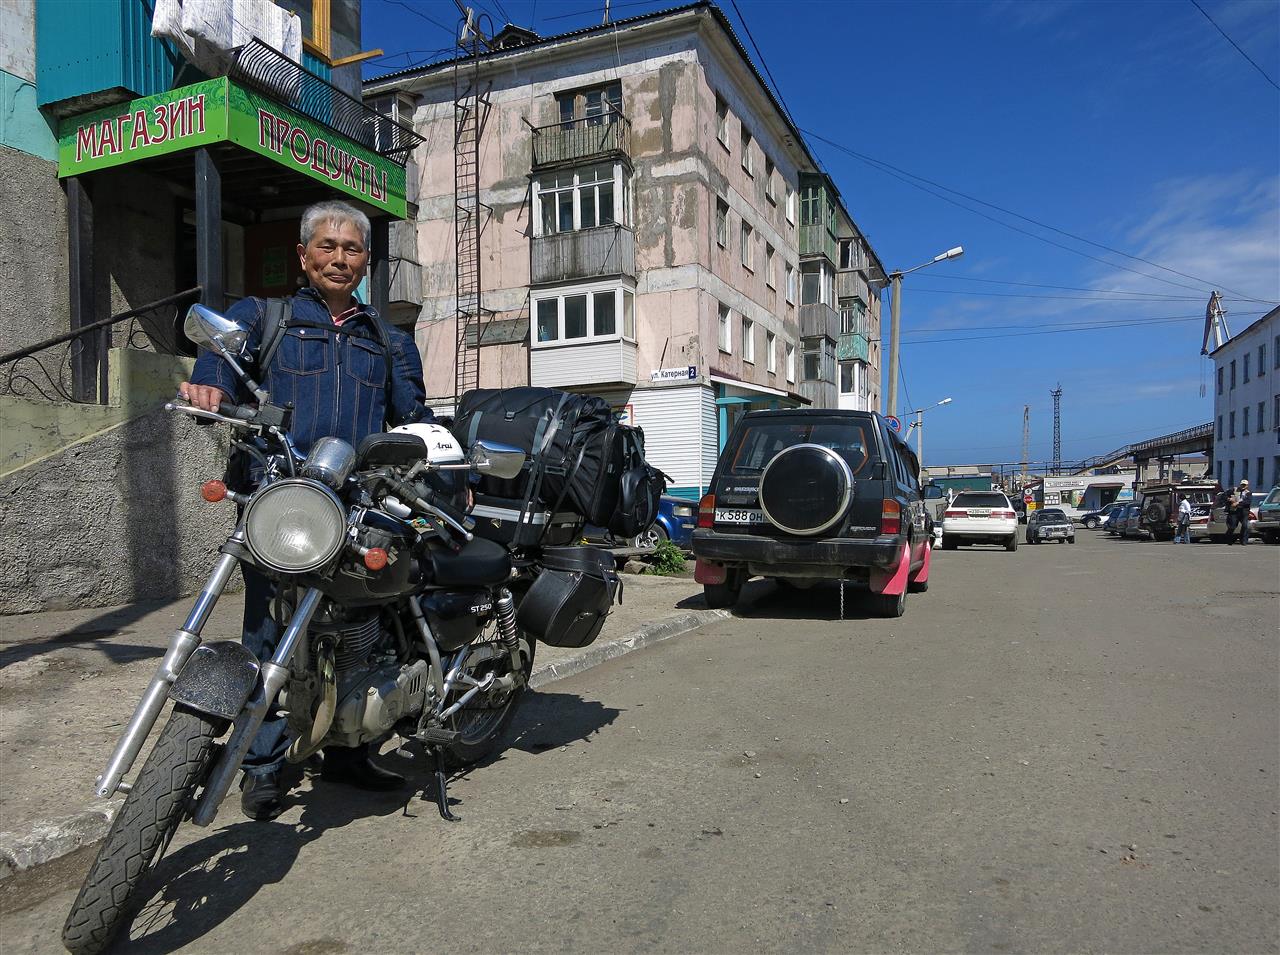 70 Jahre alter Japaner auf Reisen (Russland)